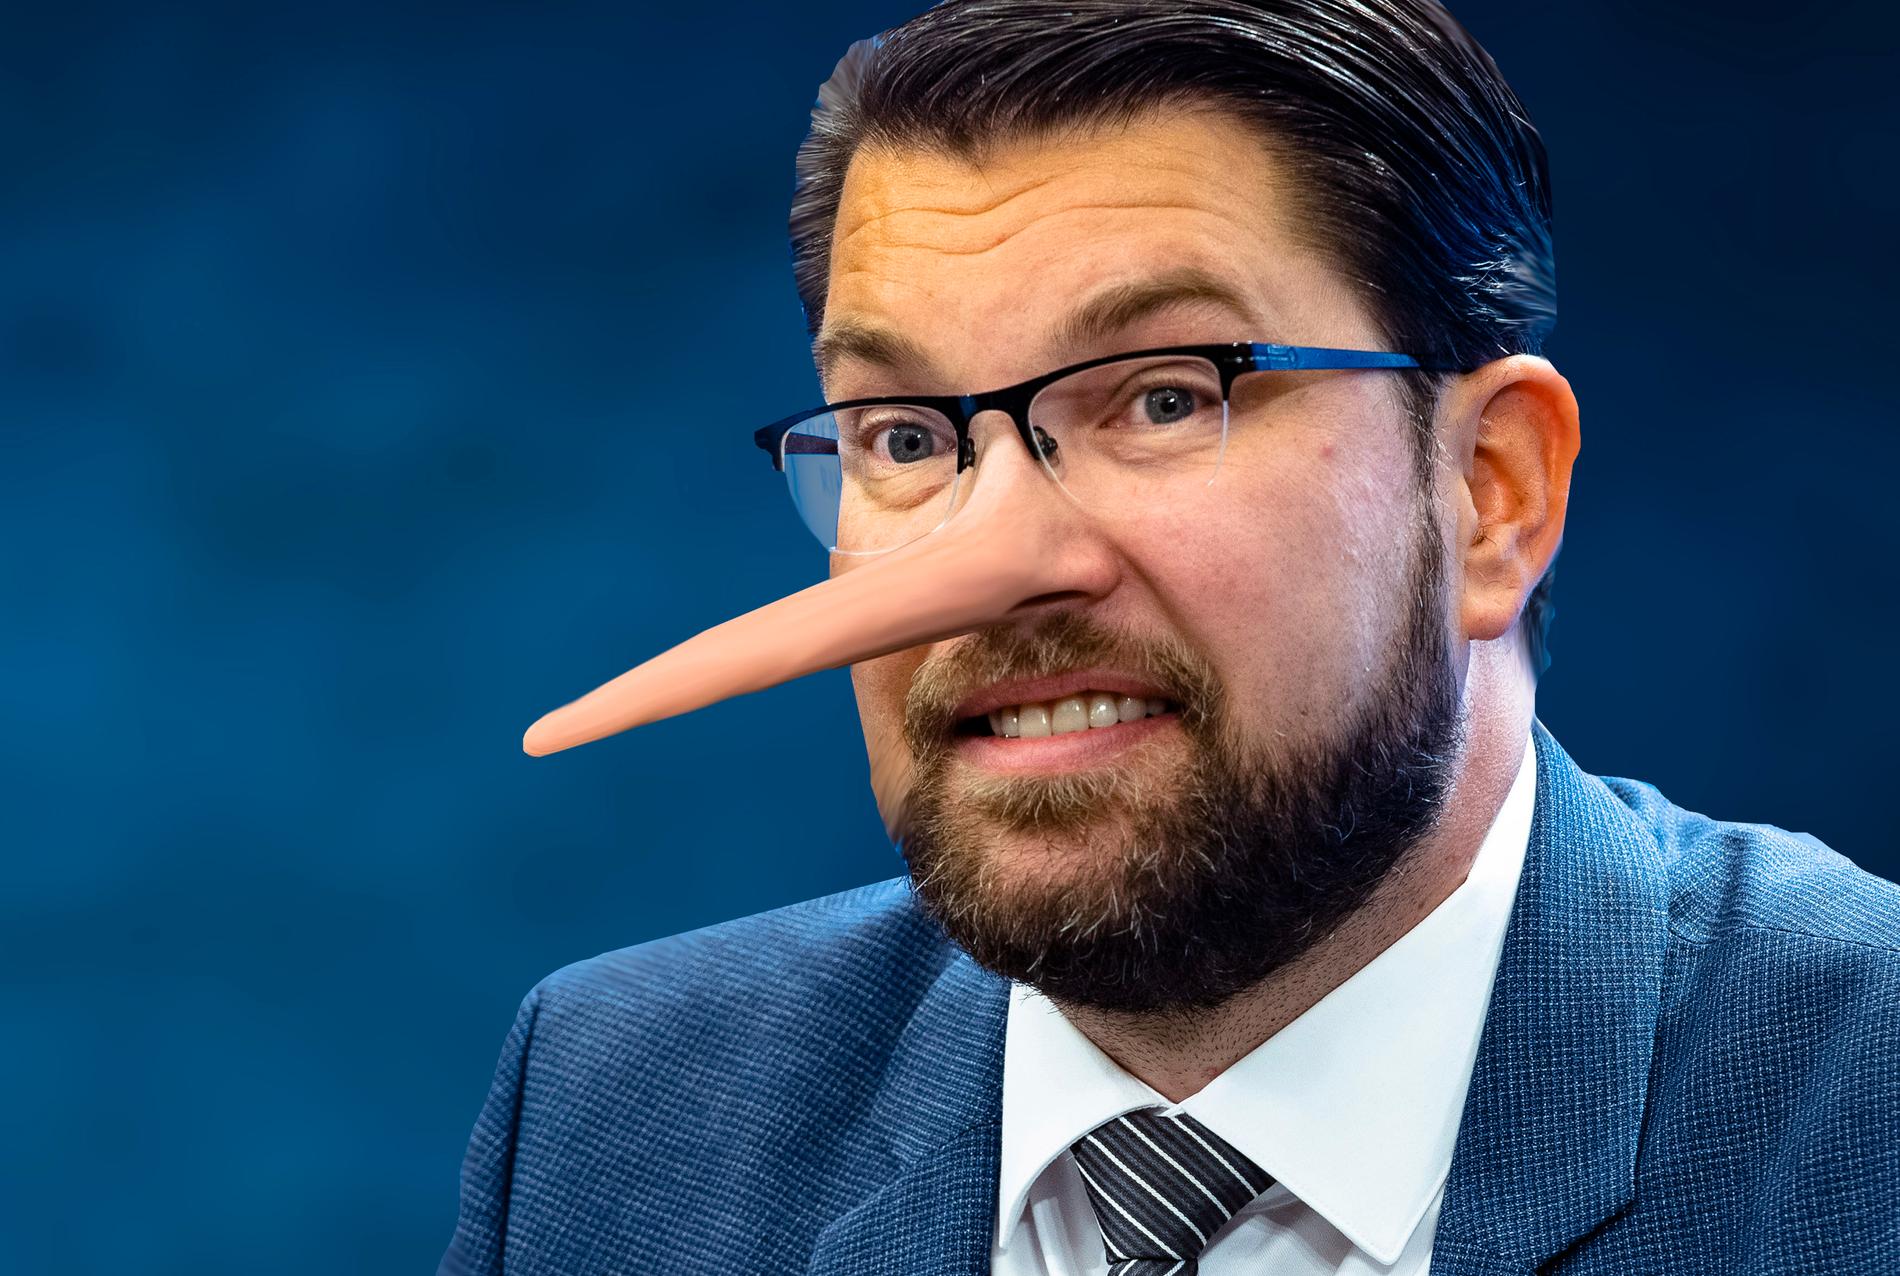 Många SD-väljare känner sig besvikna på partiet efter Jimmie Åkessons Tidöavtal med regeringen. Bilden är ett montage.